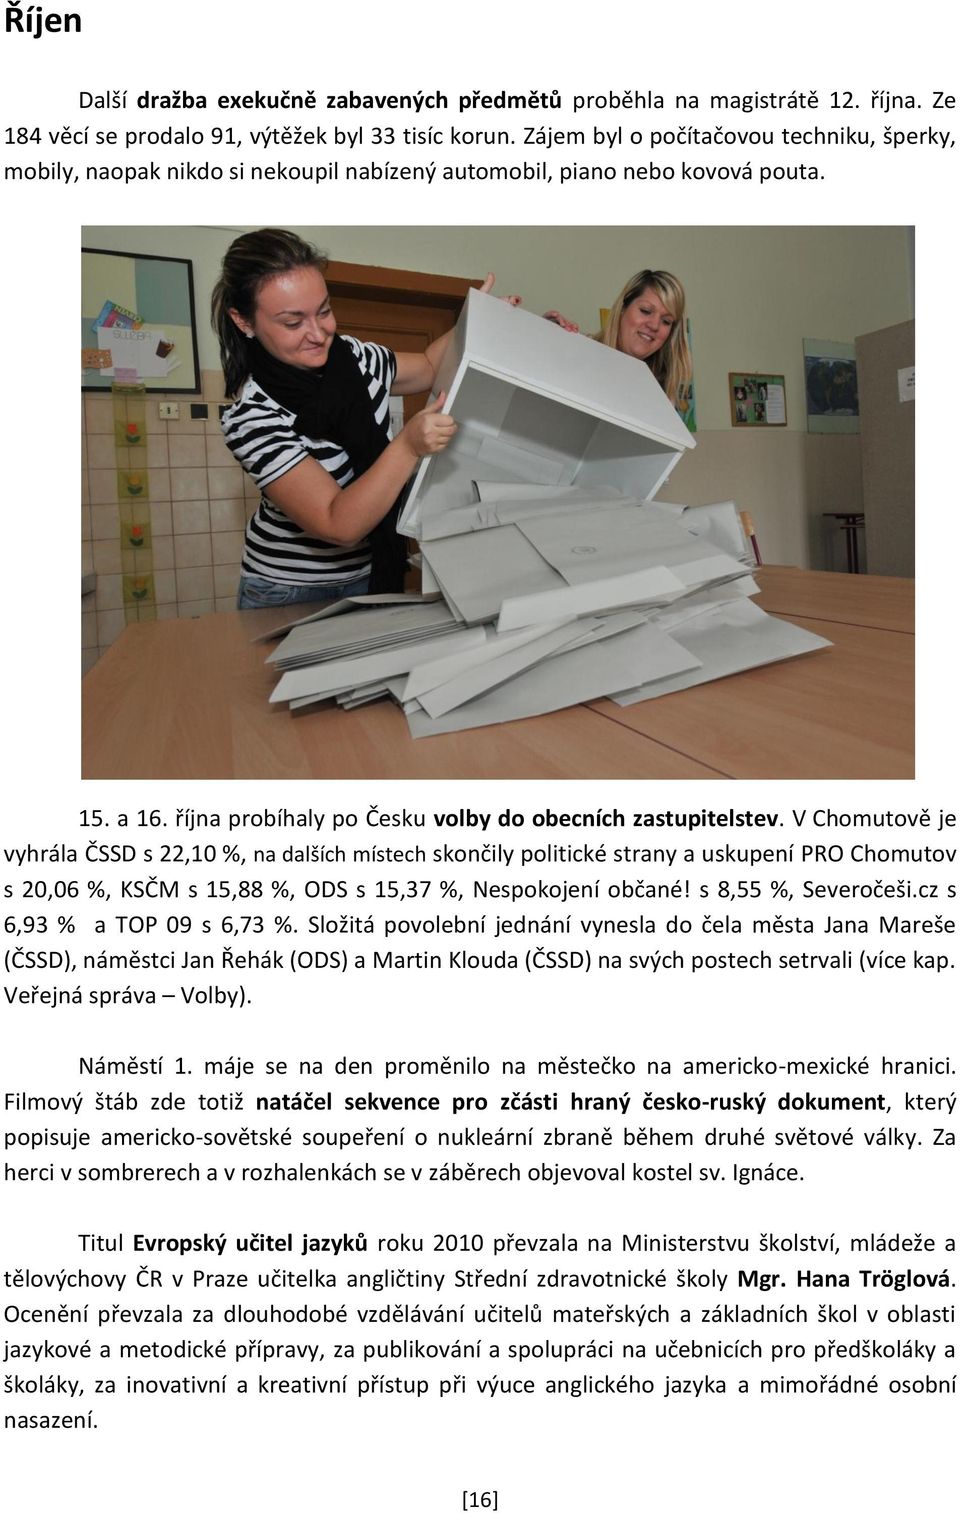 V Chomutově je vyhrála ČSSD s 22,10 %, na dalších místech skončily politické strany a uskupení PRO Chomutov s 20,06 %, KSČM s 15,88 %, ODS s 15,37 %, Nespokojení občané! s 8,55 %, Severočeši.